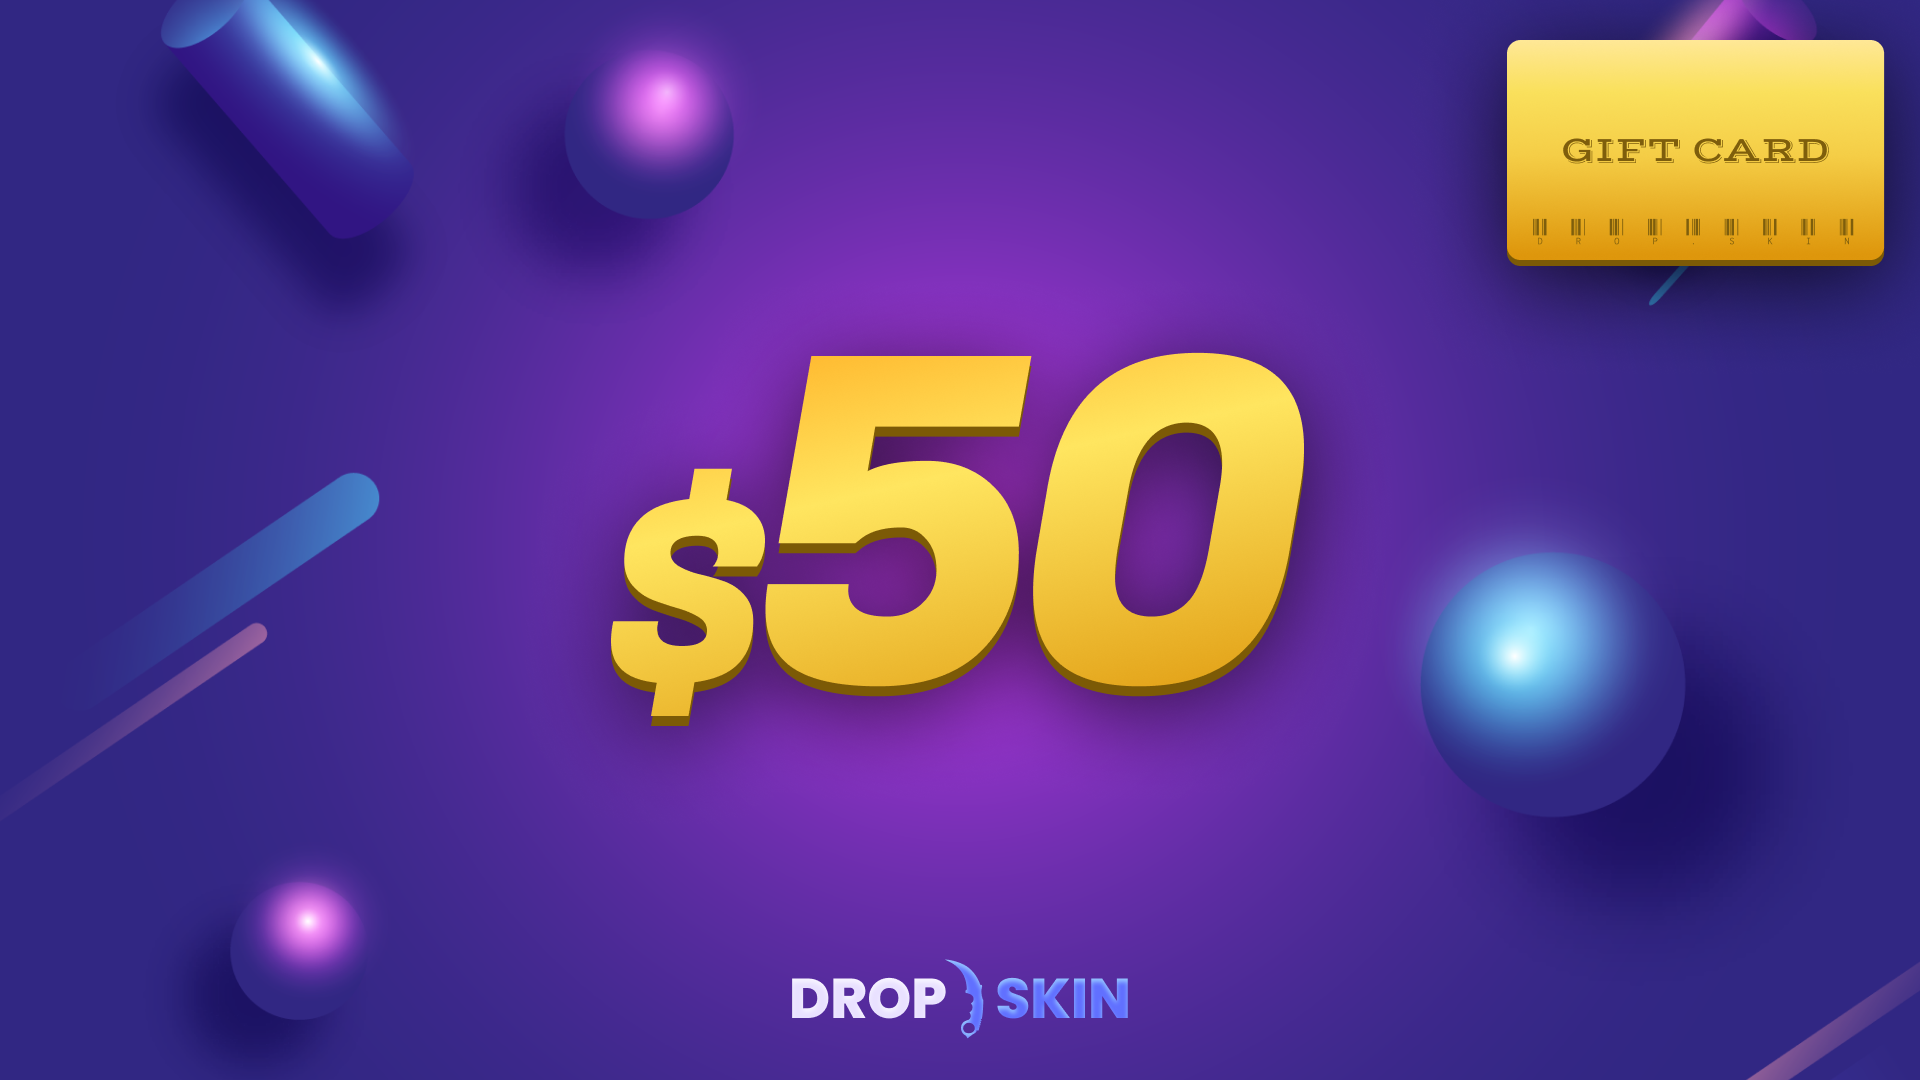 Drop.skin $50 Gift Card